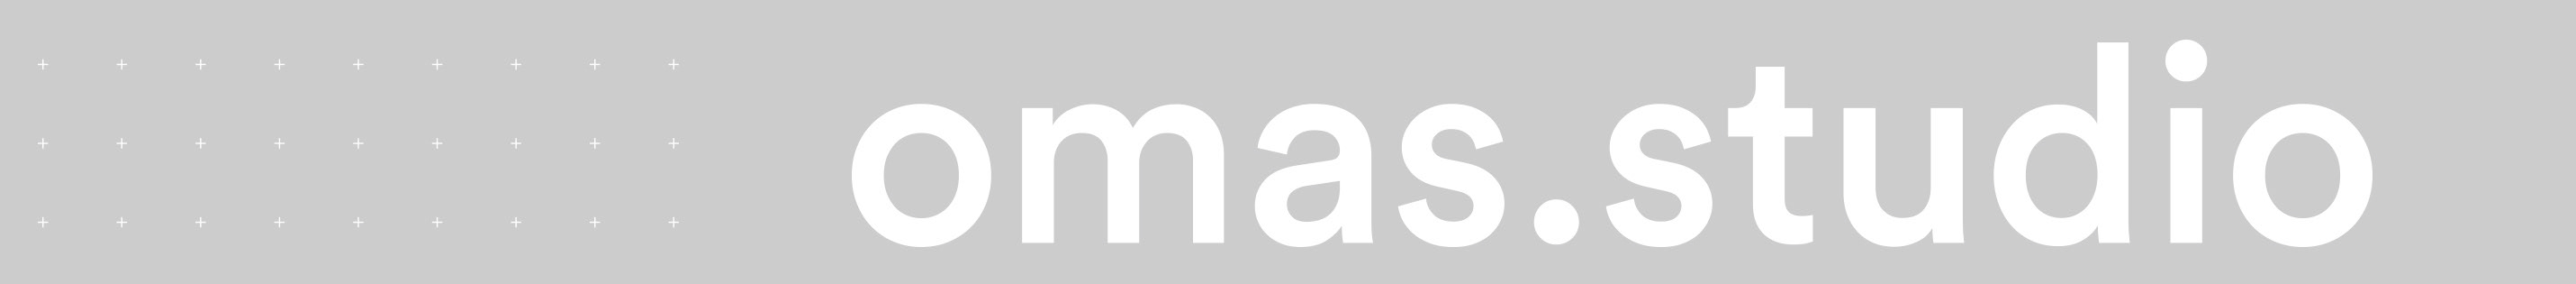 omas. studio's profile banner